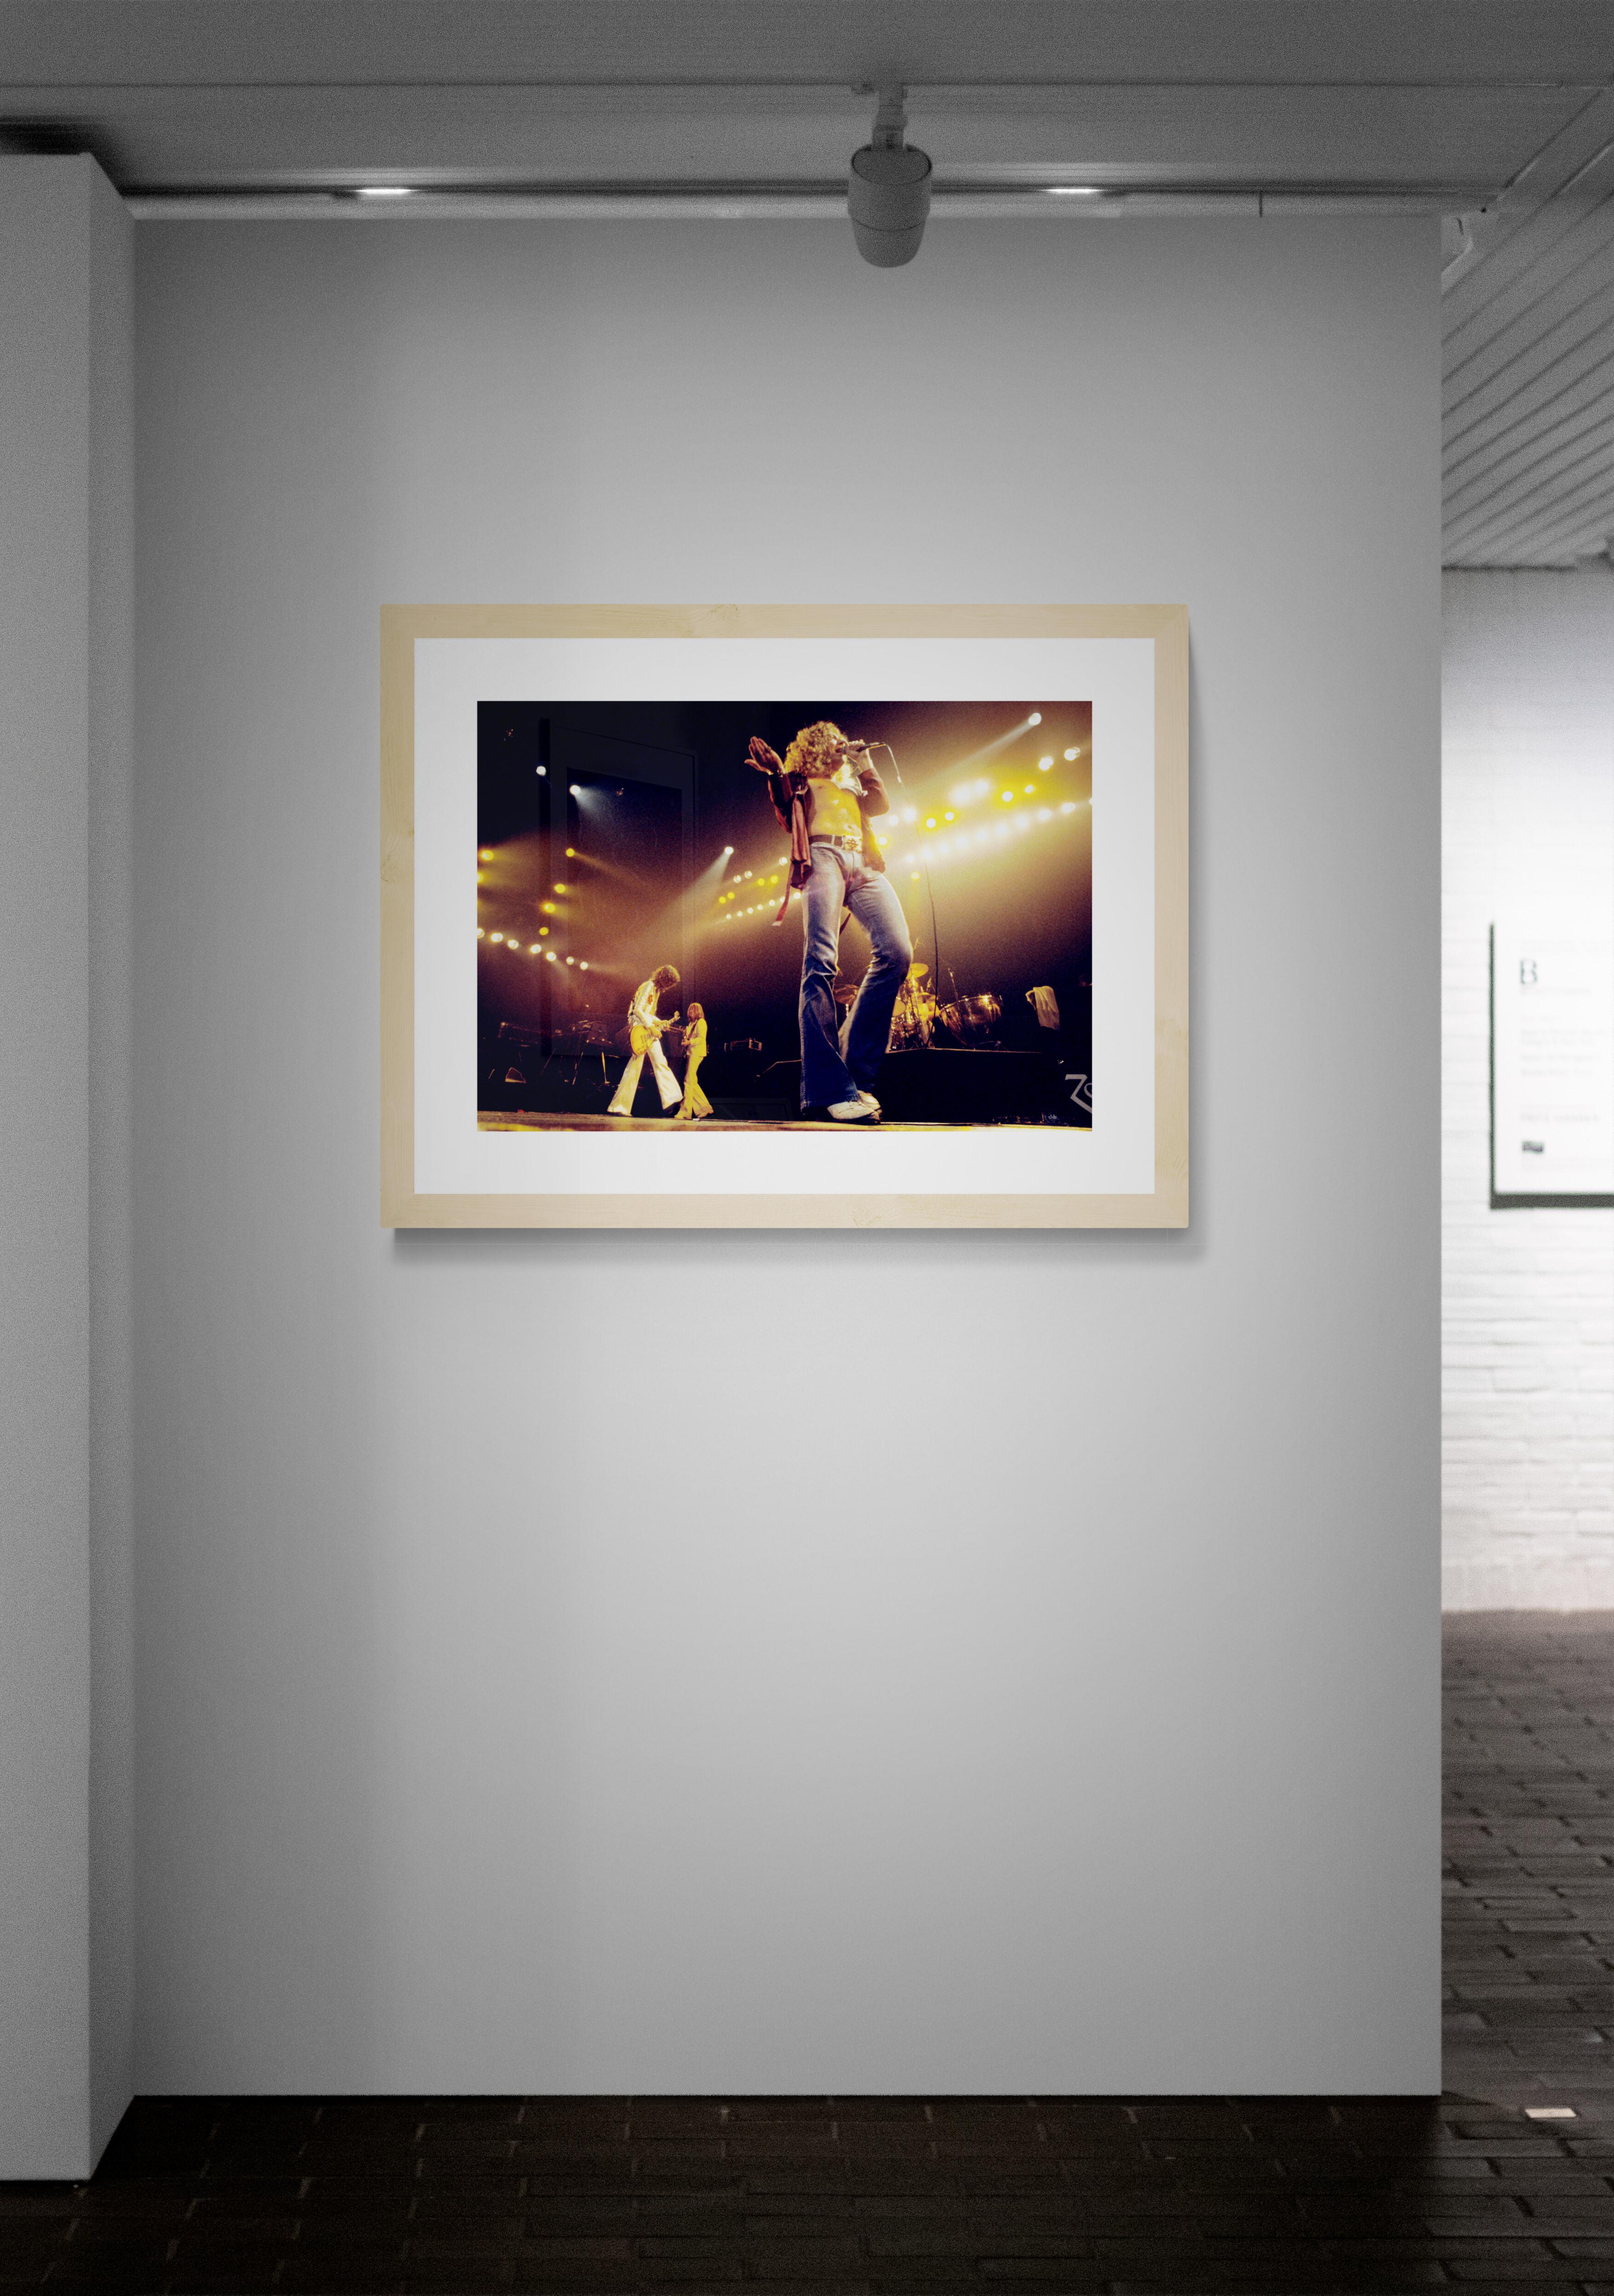 Titel: Led Zeppelin #4 Konzertfoto
Künstler: Richard E. Aaron
Nachlass-Edition: Handnummeriert mit Nachlassstempel im Rand, Signaturstempel auf der Rückseite, Pigmentdruck auf Hahnemühle Photo Rag Pearl, 100% Baumwollpapier, Kunstdruckpapier.